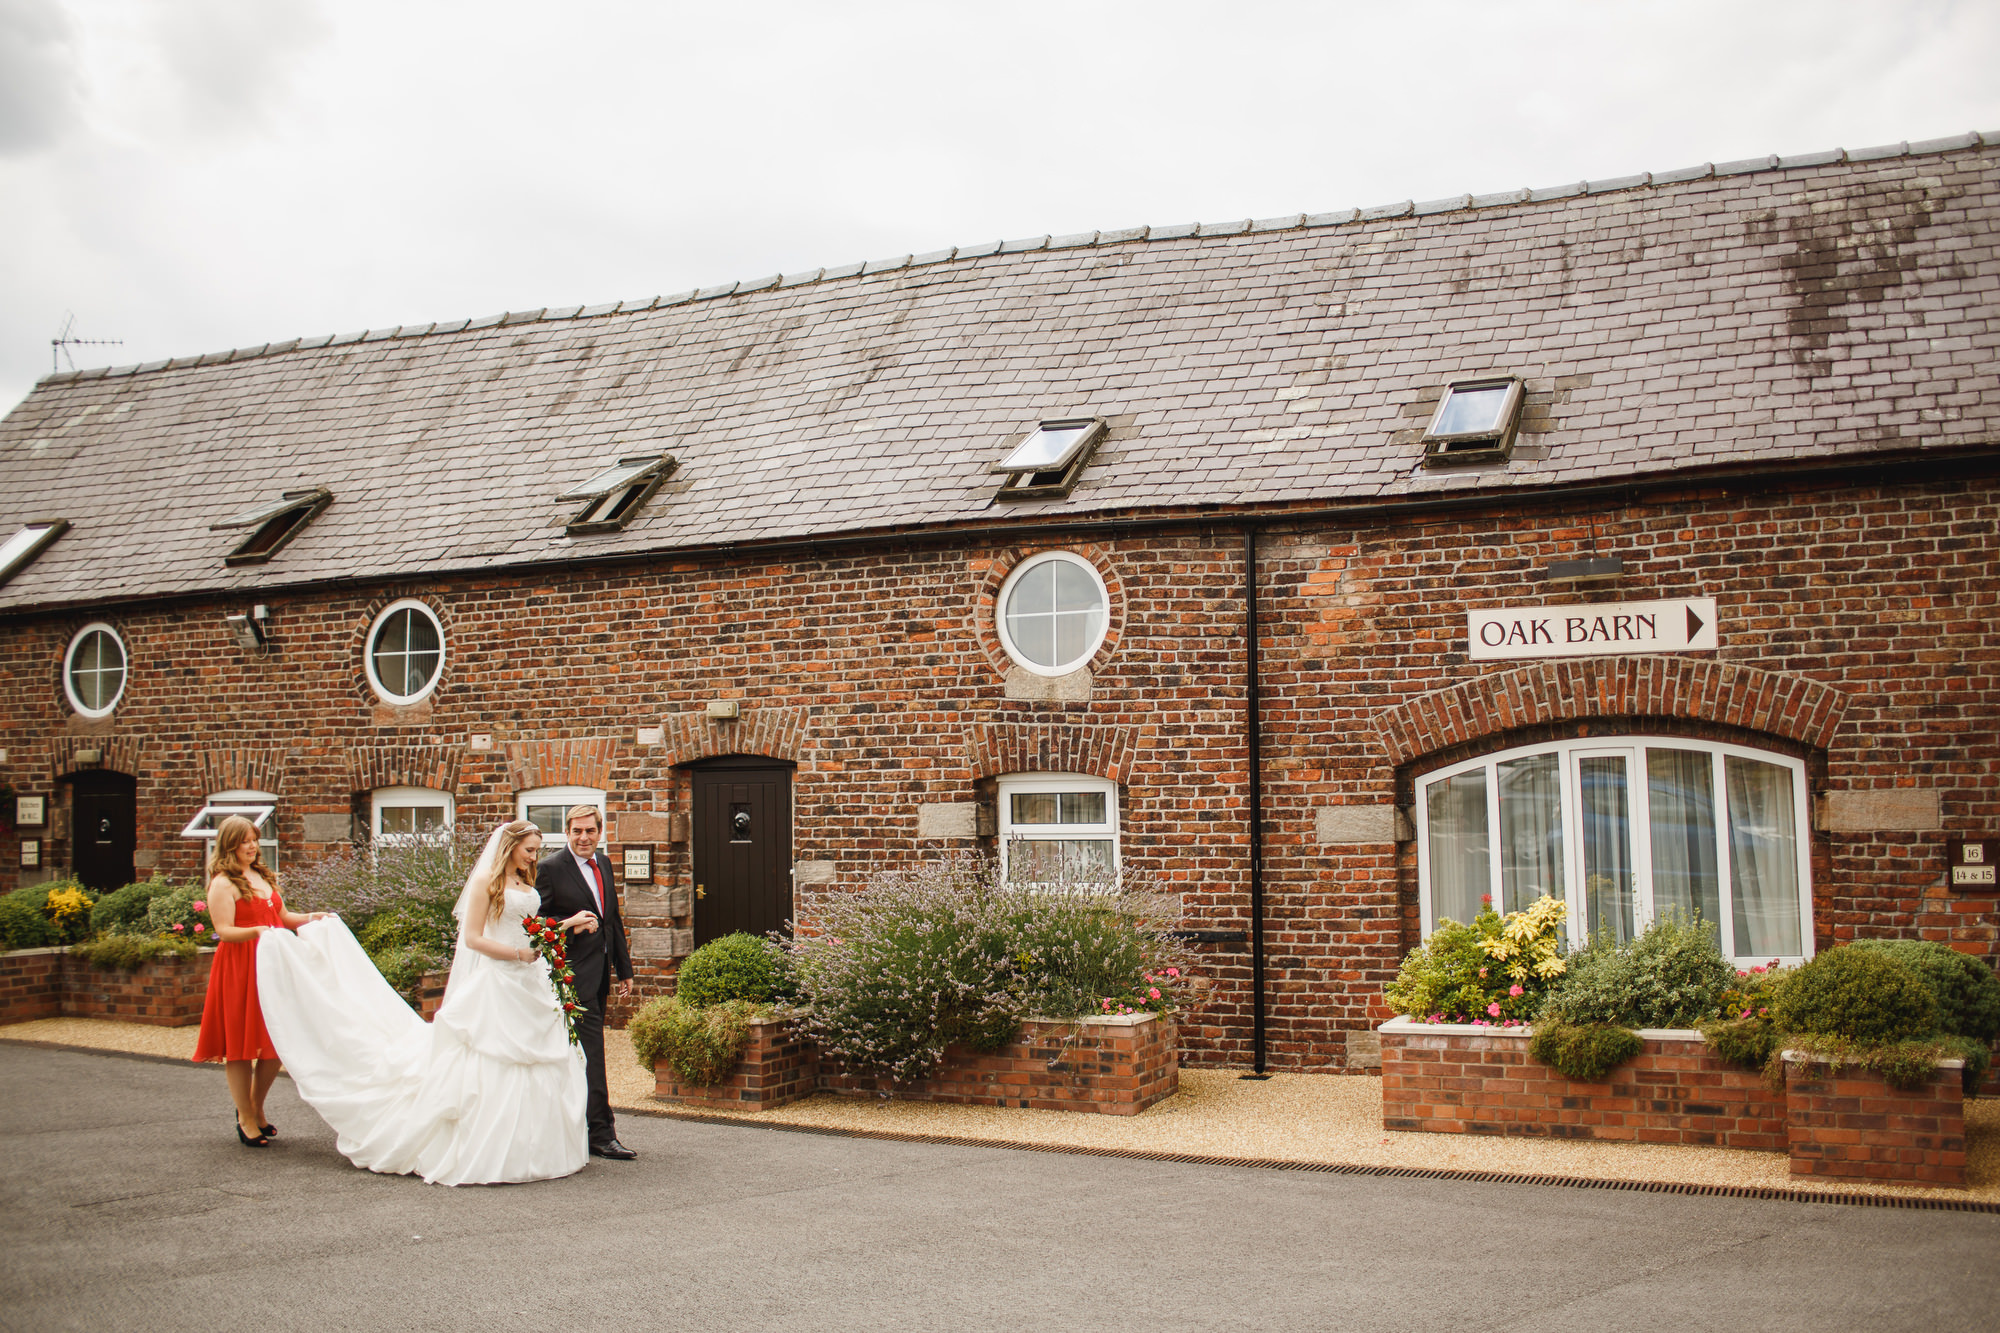 Barn wedding photographers cheshire